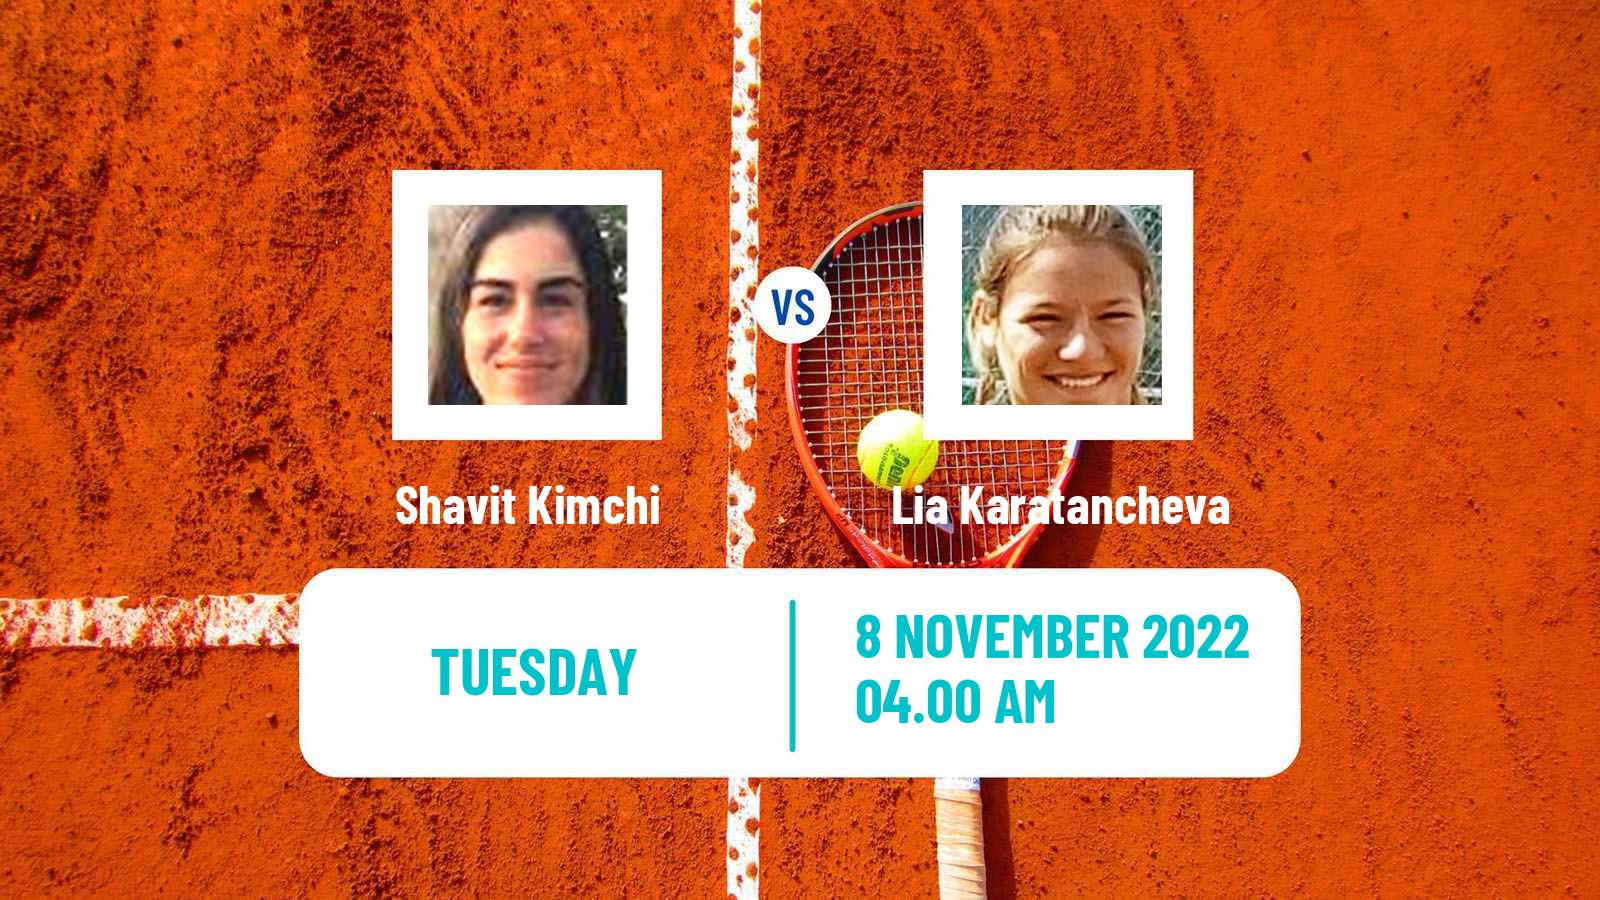 Tennis ITF Tournaments Shavit Kimchi - Lia Karatancheva